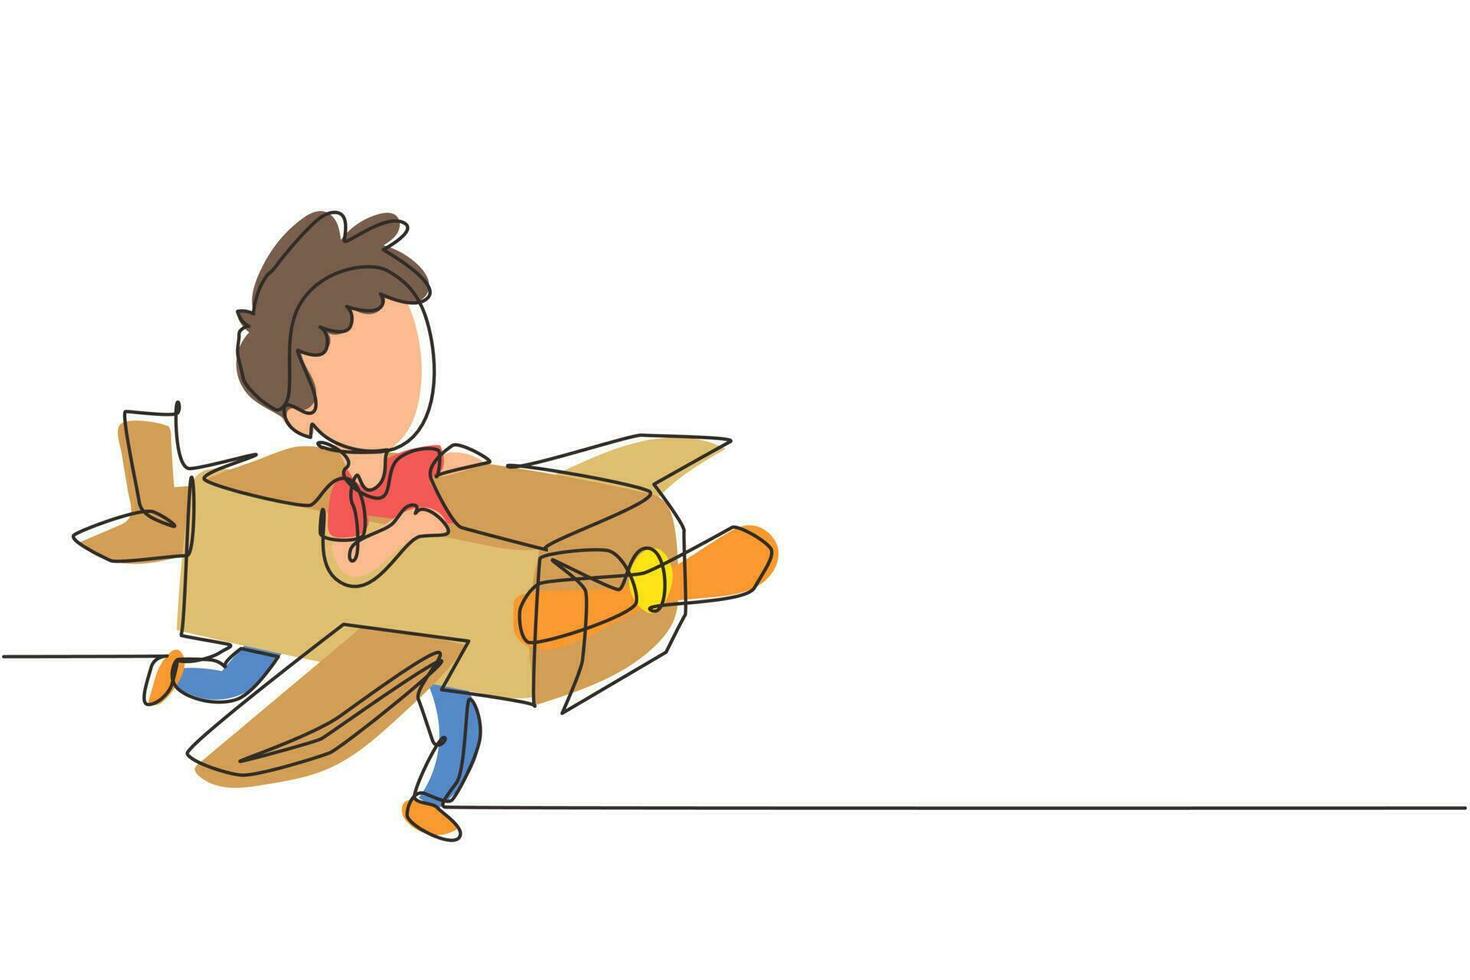 único desenho de uma linha menino criativo jogando como piloto com avião de papelão. crianças felizes andando de avião artesanal de papelão. jogo de avião. ilustração em vetor gráfico de desenho de linha contínua moderna